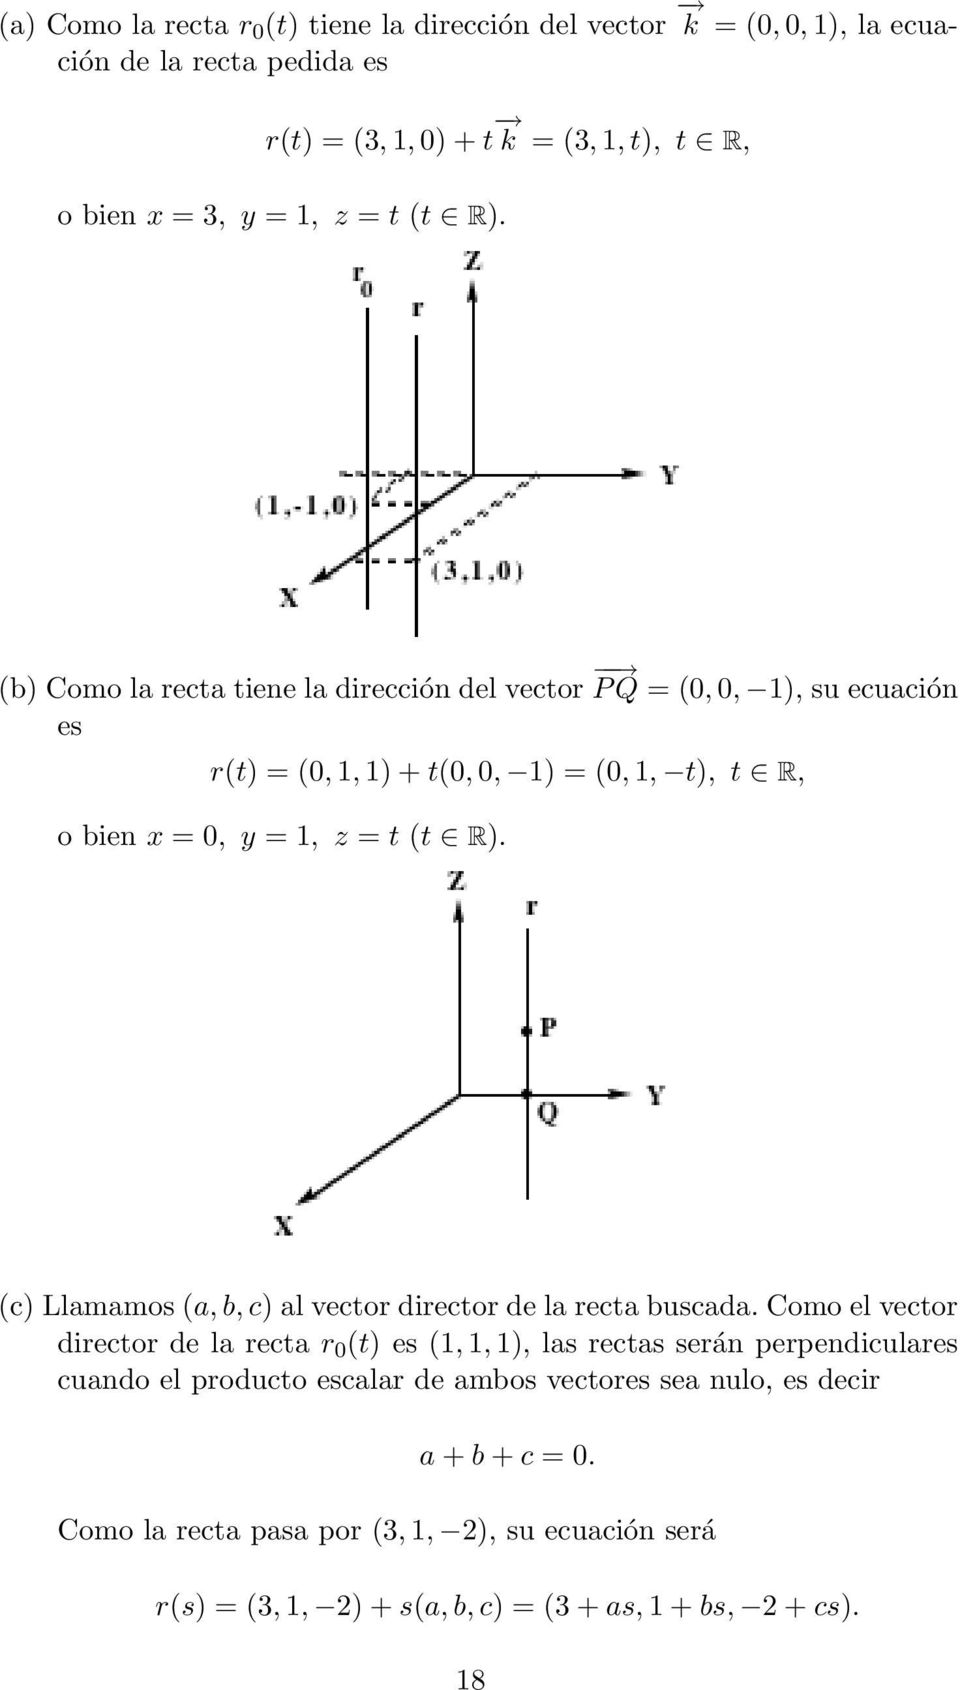 (c) Llamamos (a, b, c) al vector director de la recta buscada.